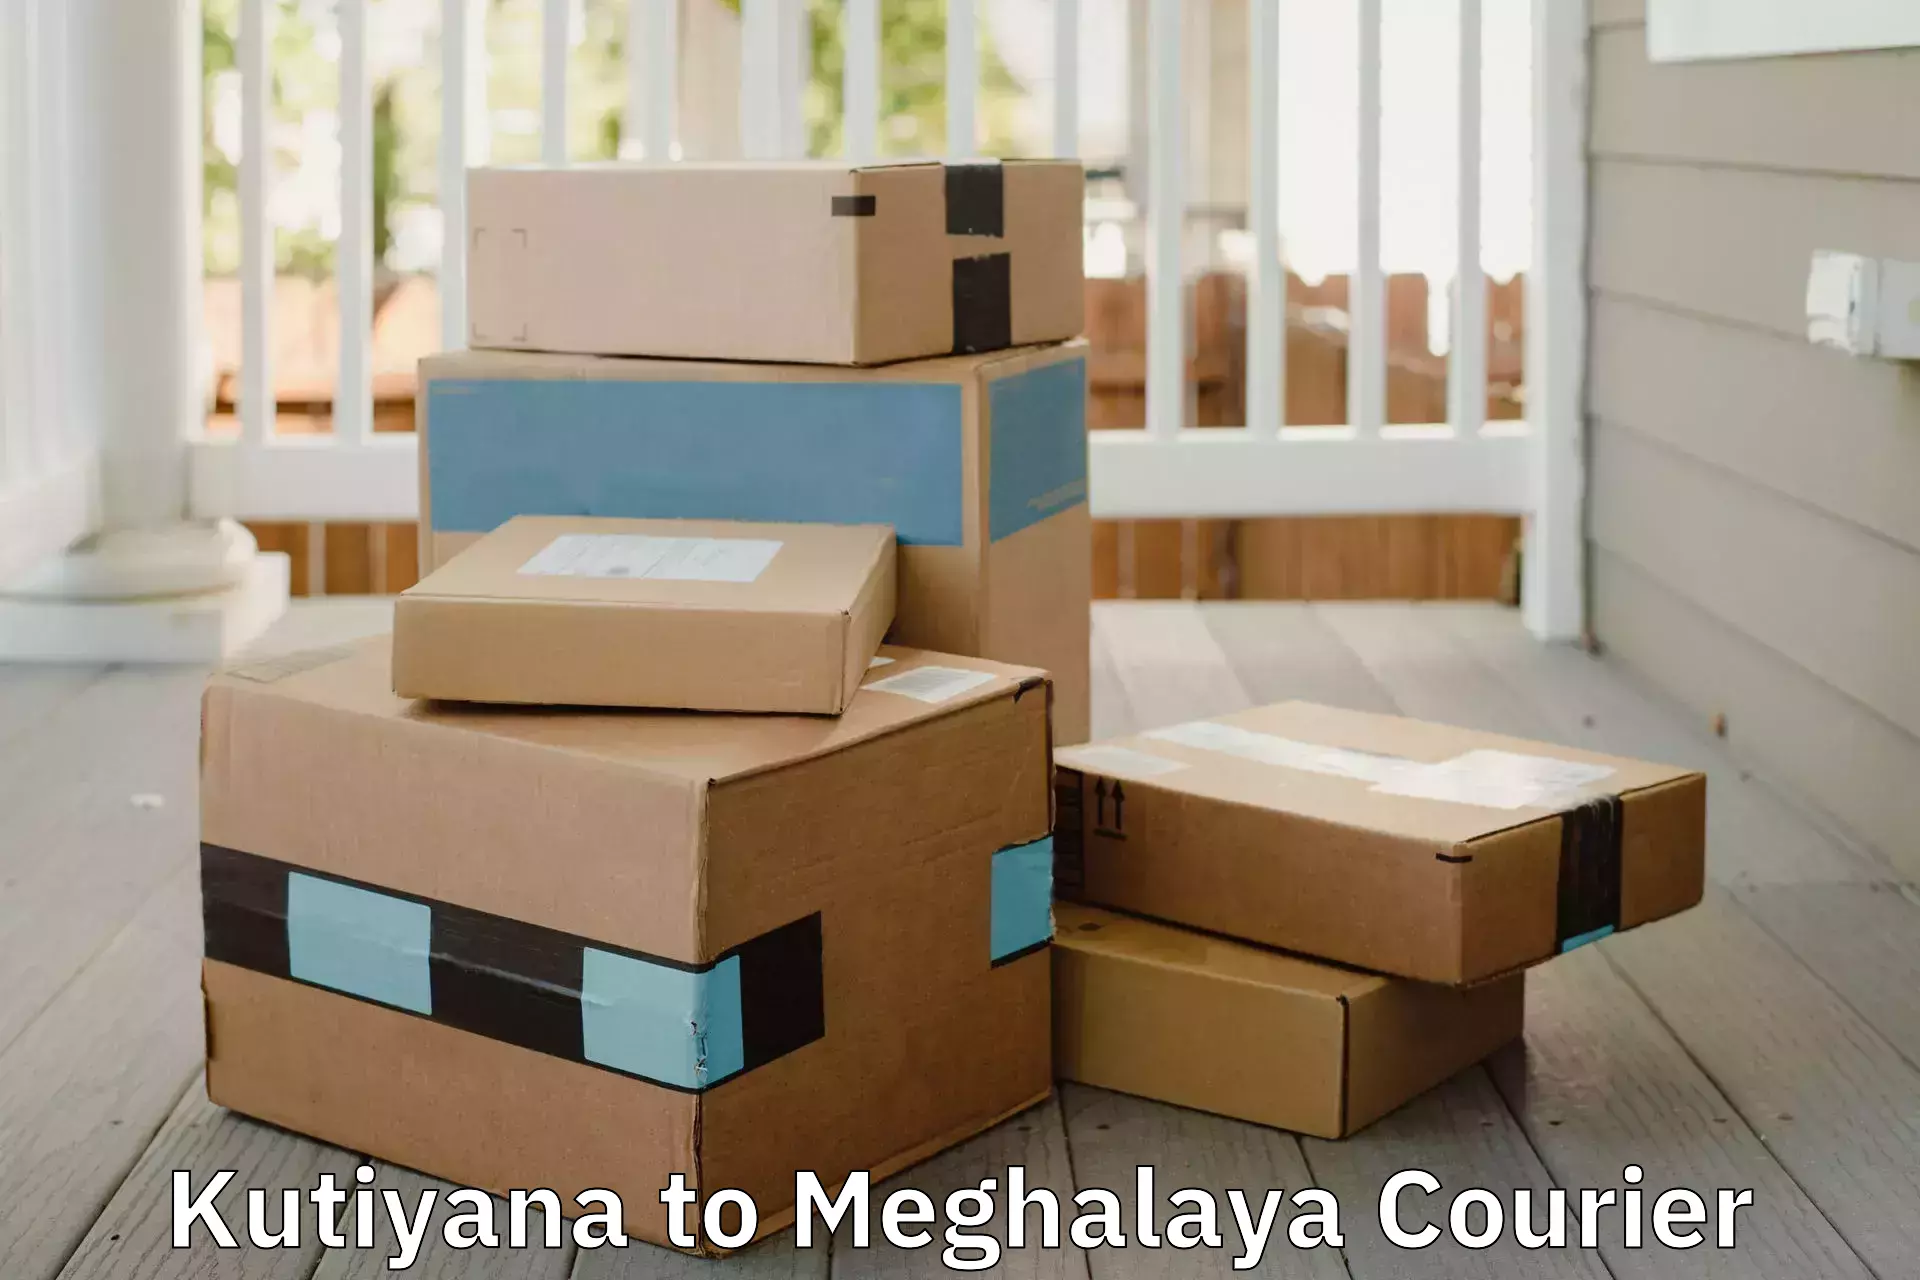 Furniture transport company Kutiyana to Dkhiah West